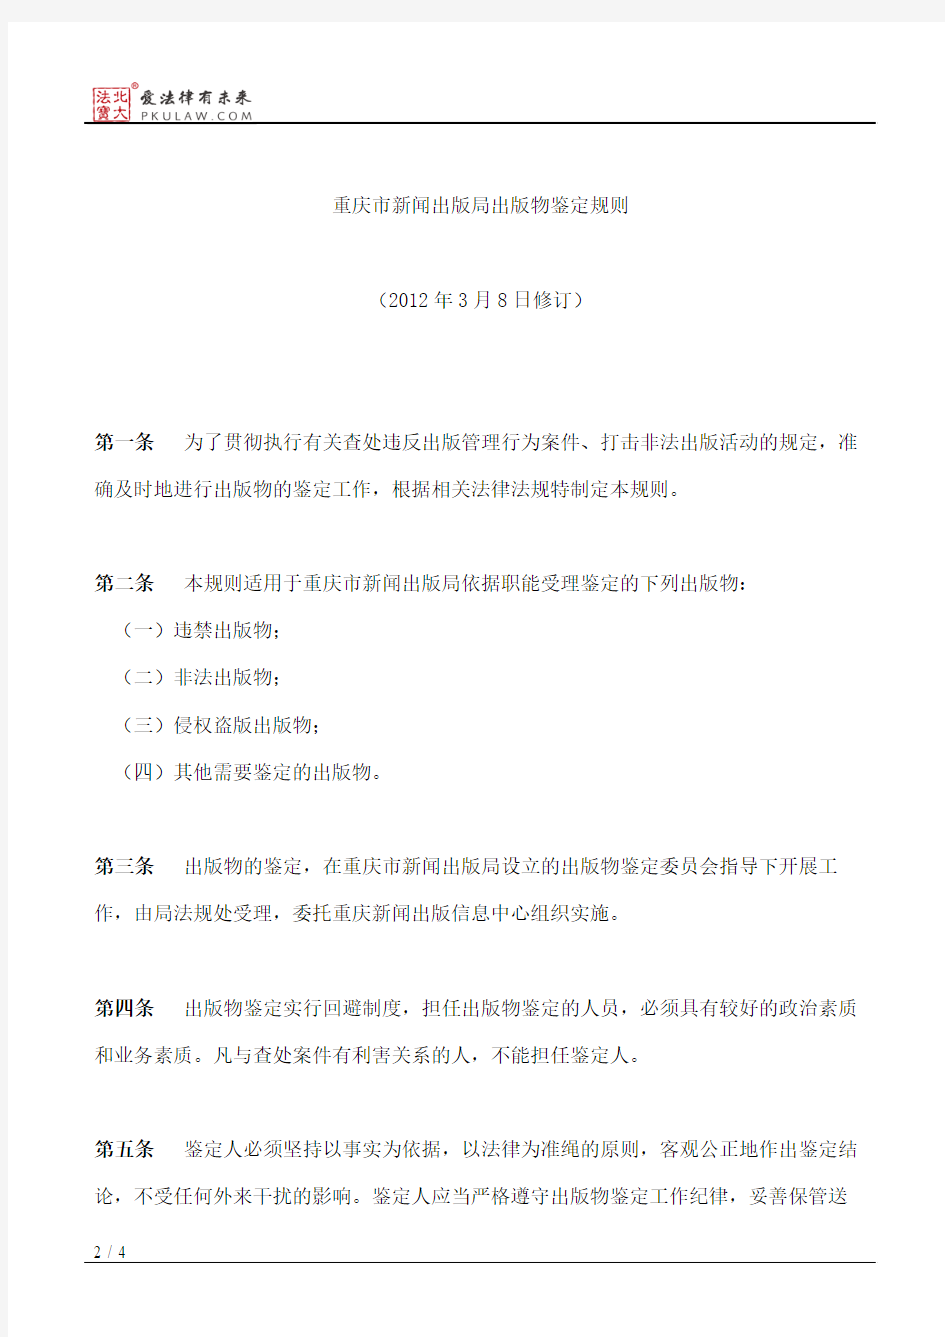 重庆市新闻出版局关于下发修订后《重庆市新闻出版局出版物鉴定规